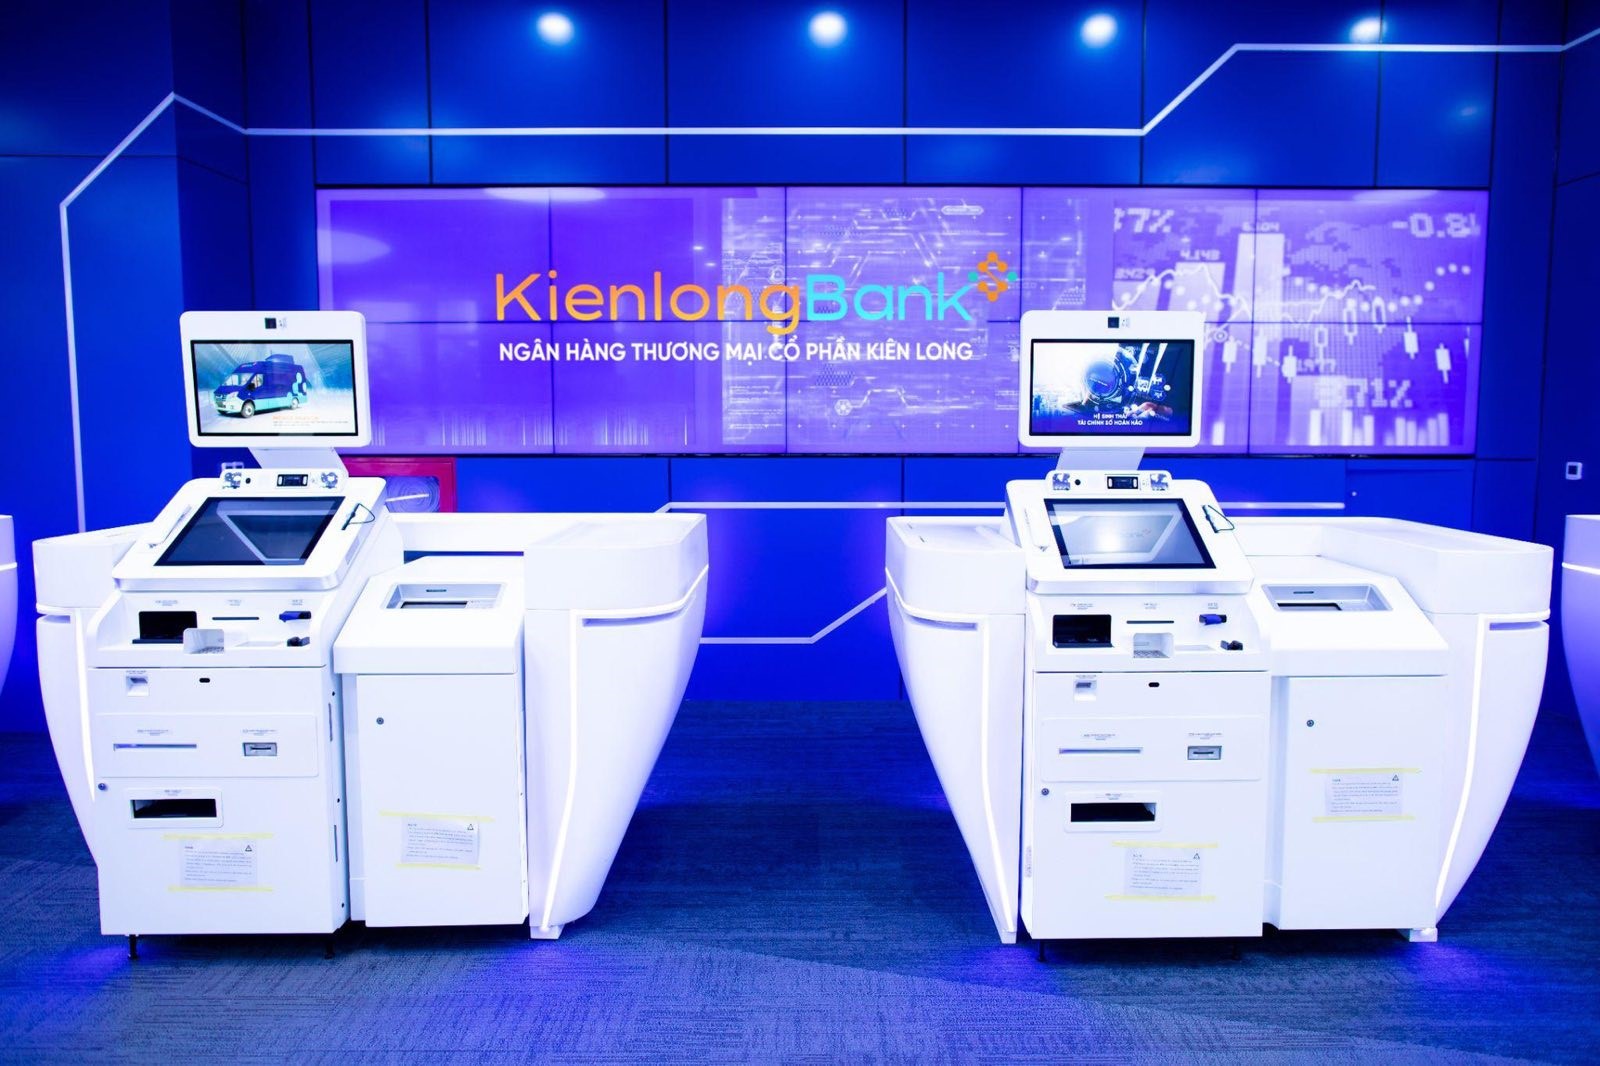  Hệ thống máy giao dịch  tự động thế hệ mới STM (Smart Teller Machine) tại KienlongBank